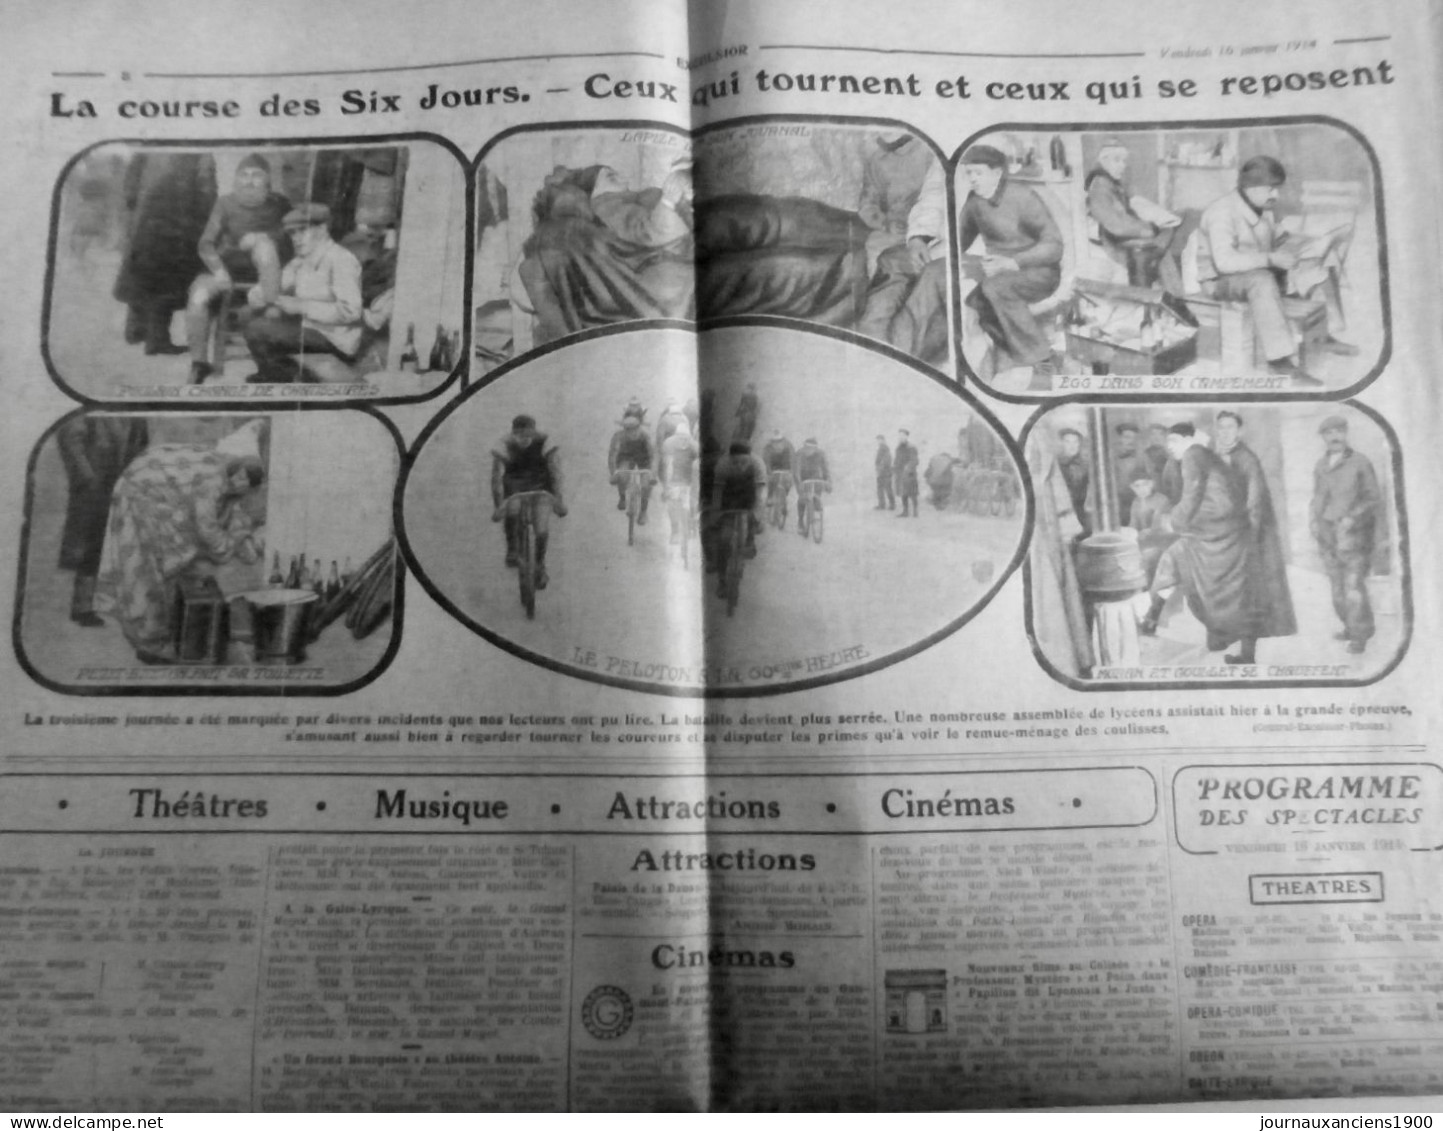 1914 EXCELSIOR ARTICLE DE PRESSE CYCLISME COURSE SIX JOURS PELOTON 1 JOURNAL ANCIEN - Glass Slides